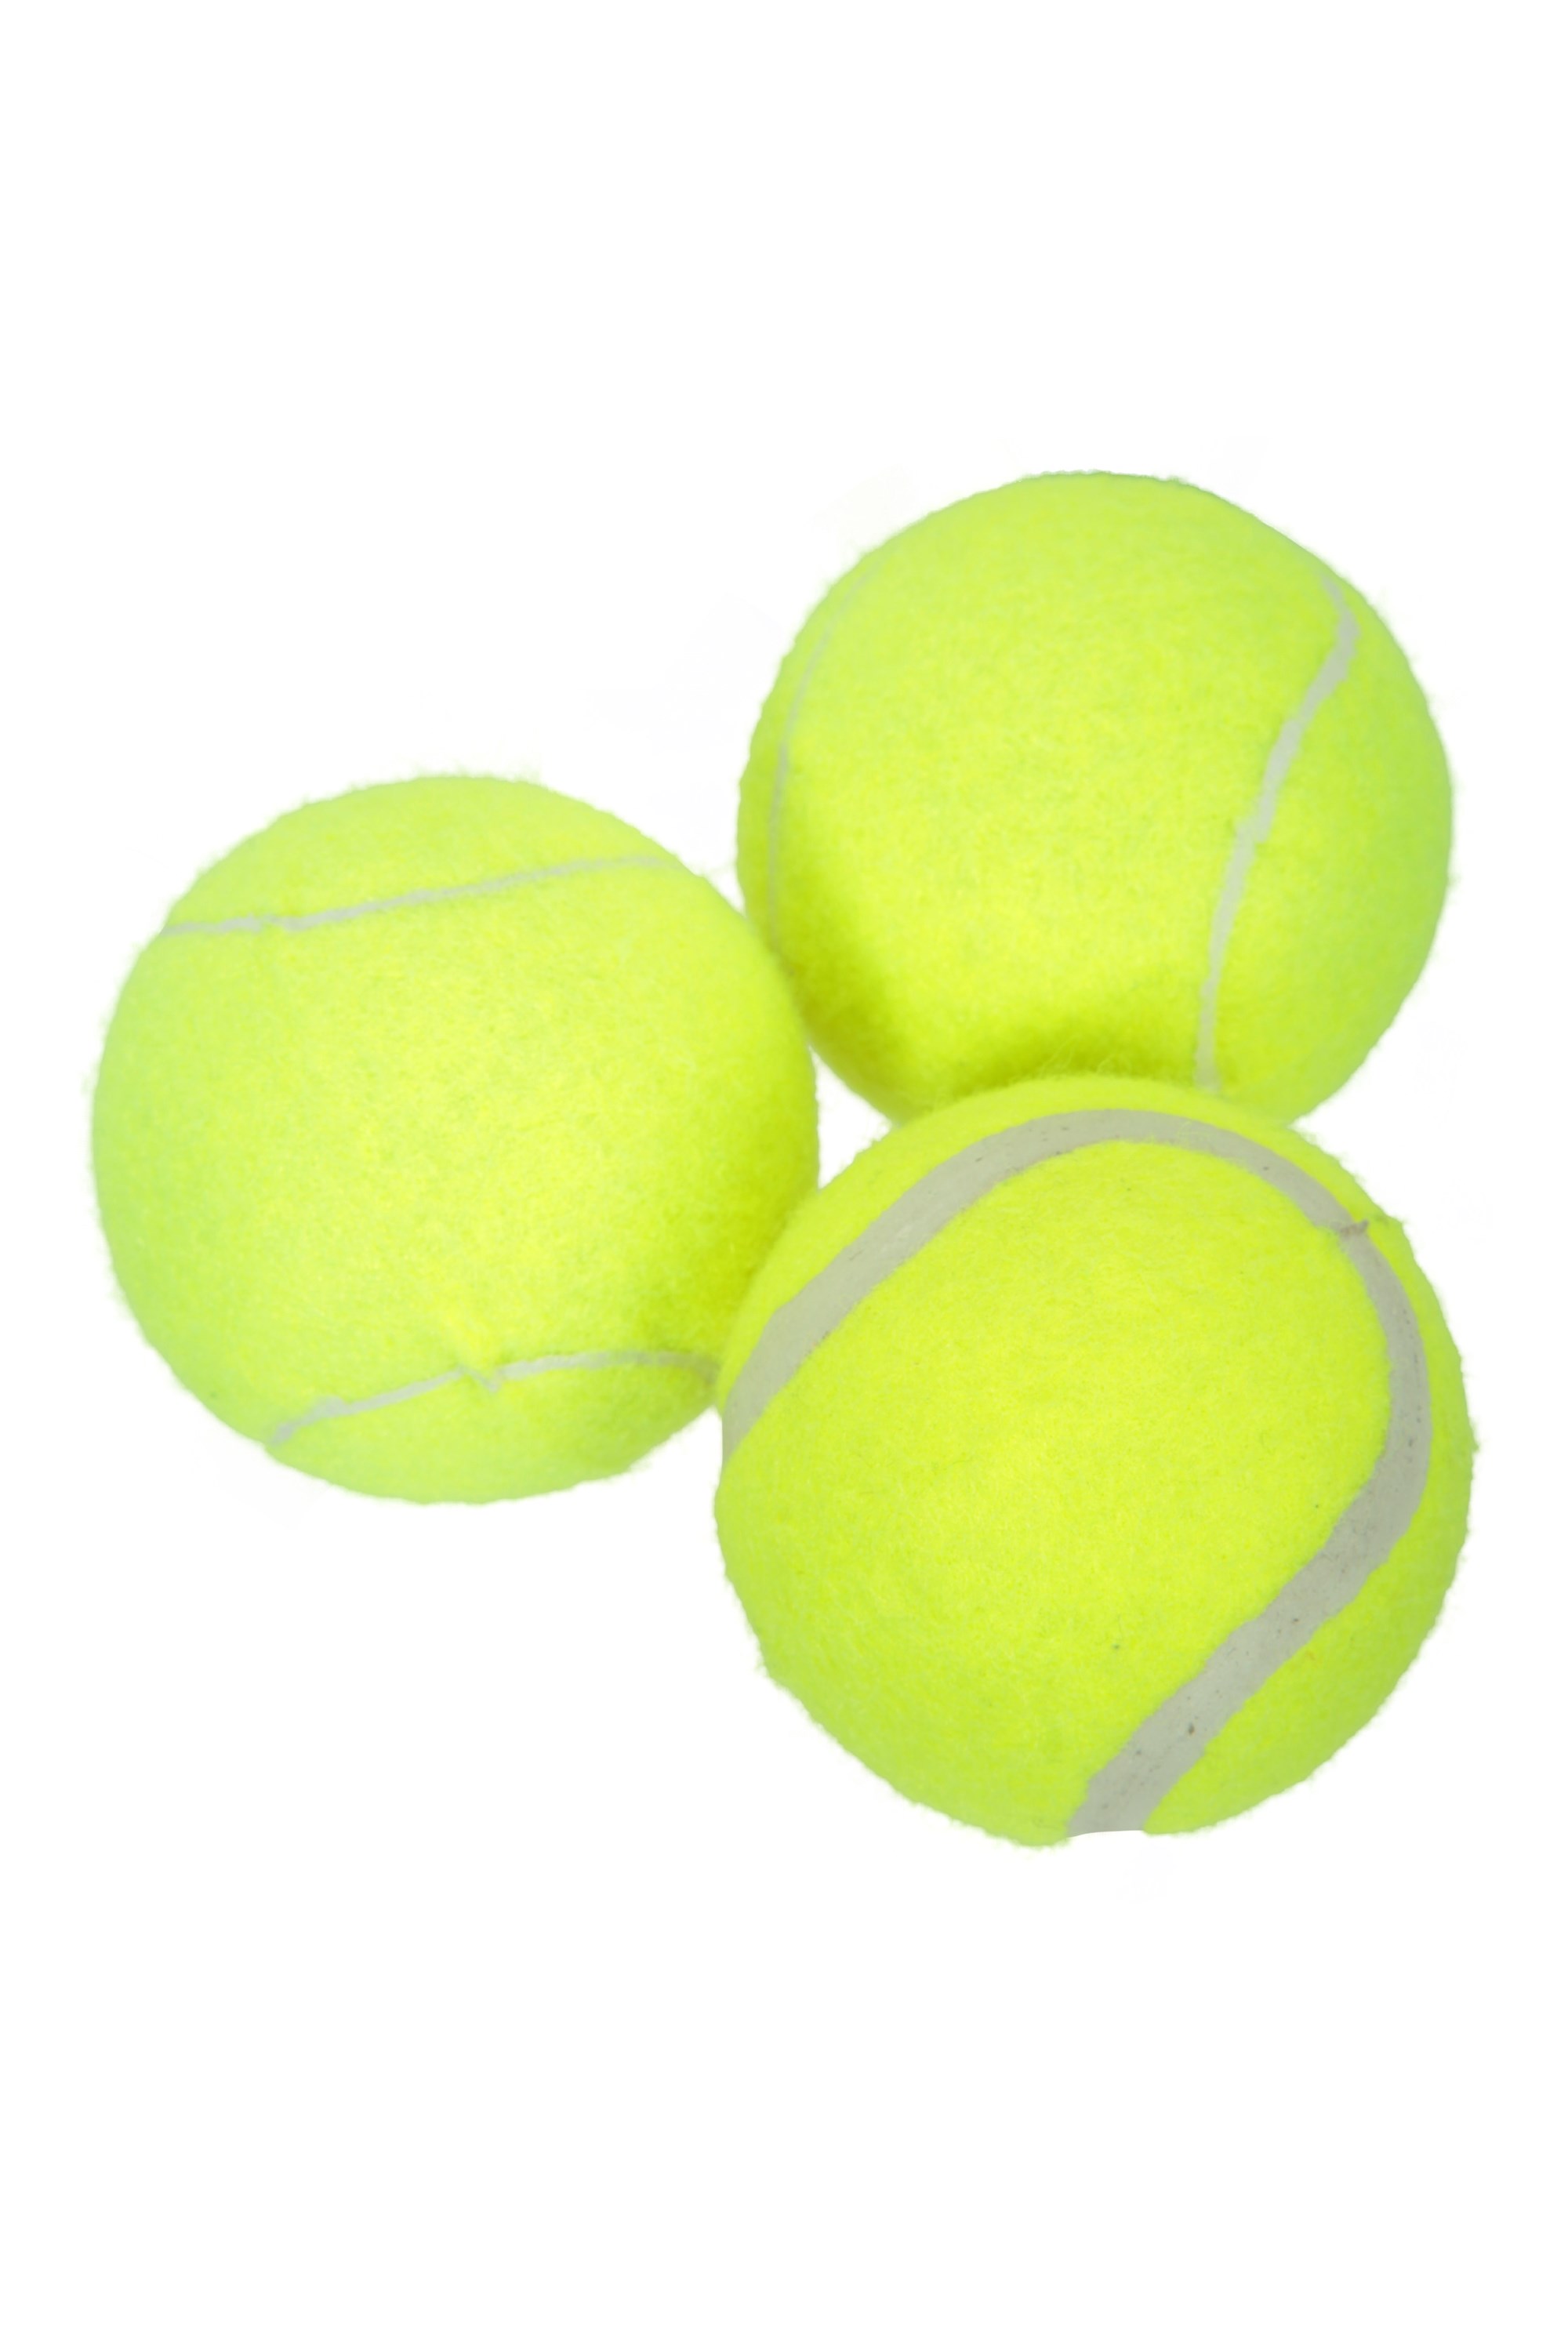 Balles de Tennis - 3 - Jaune